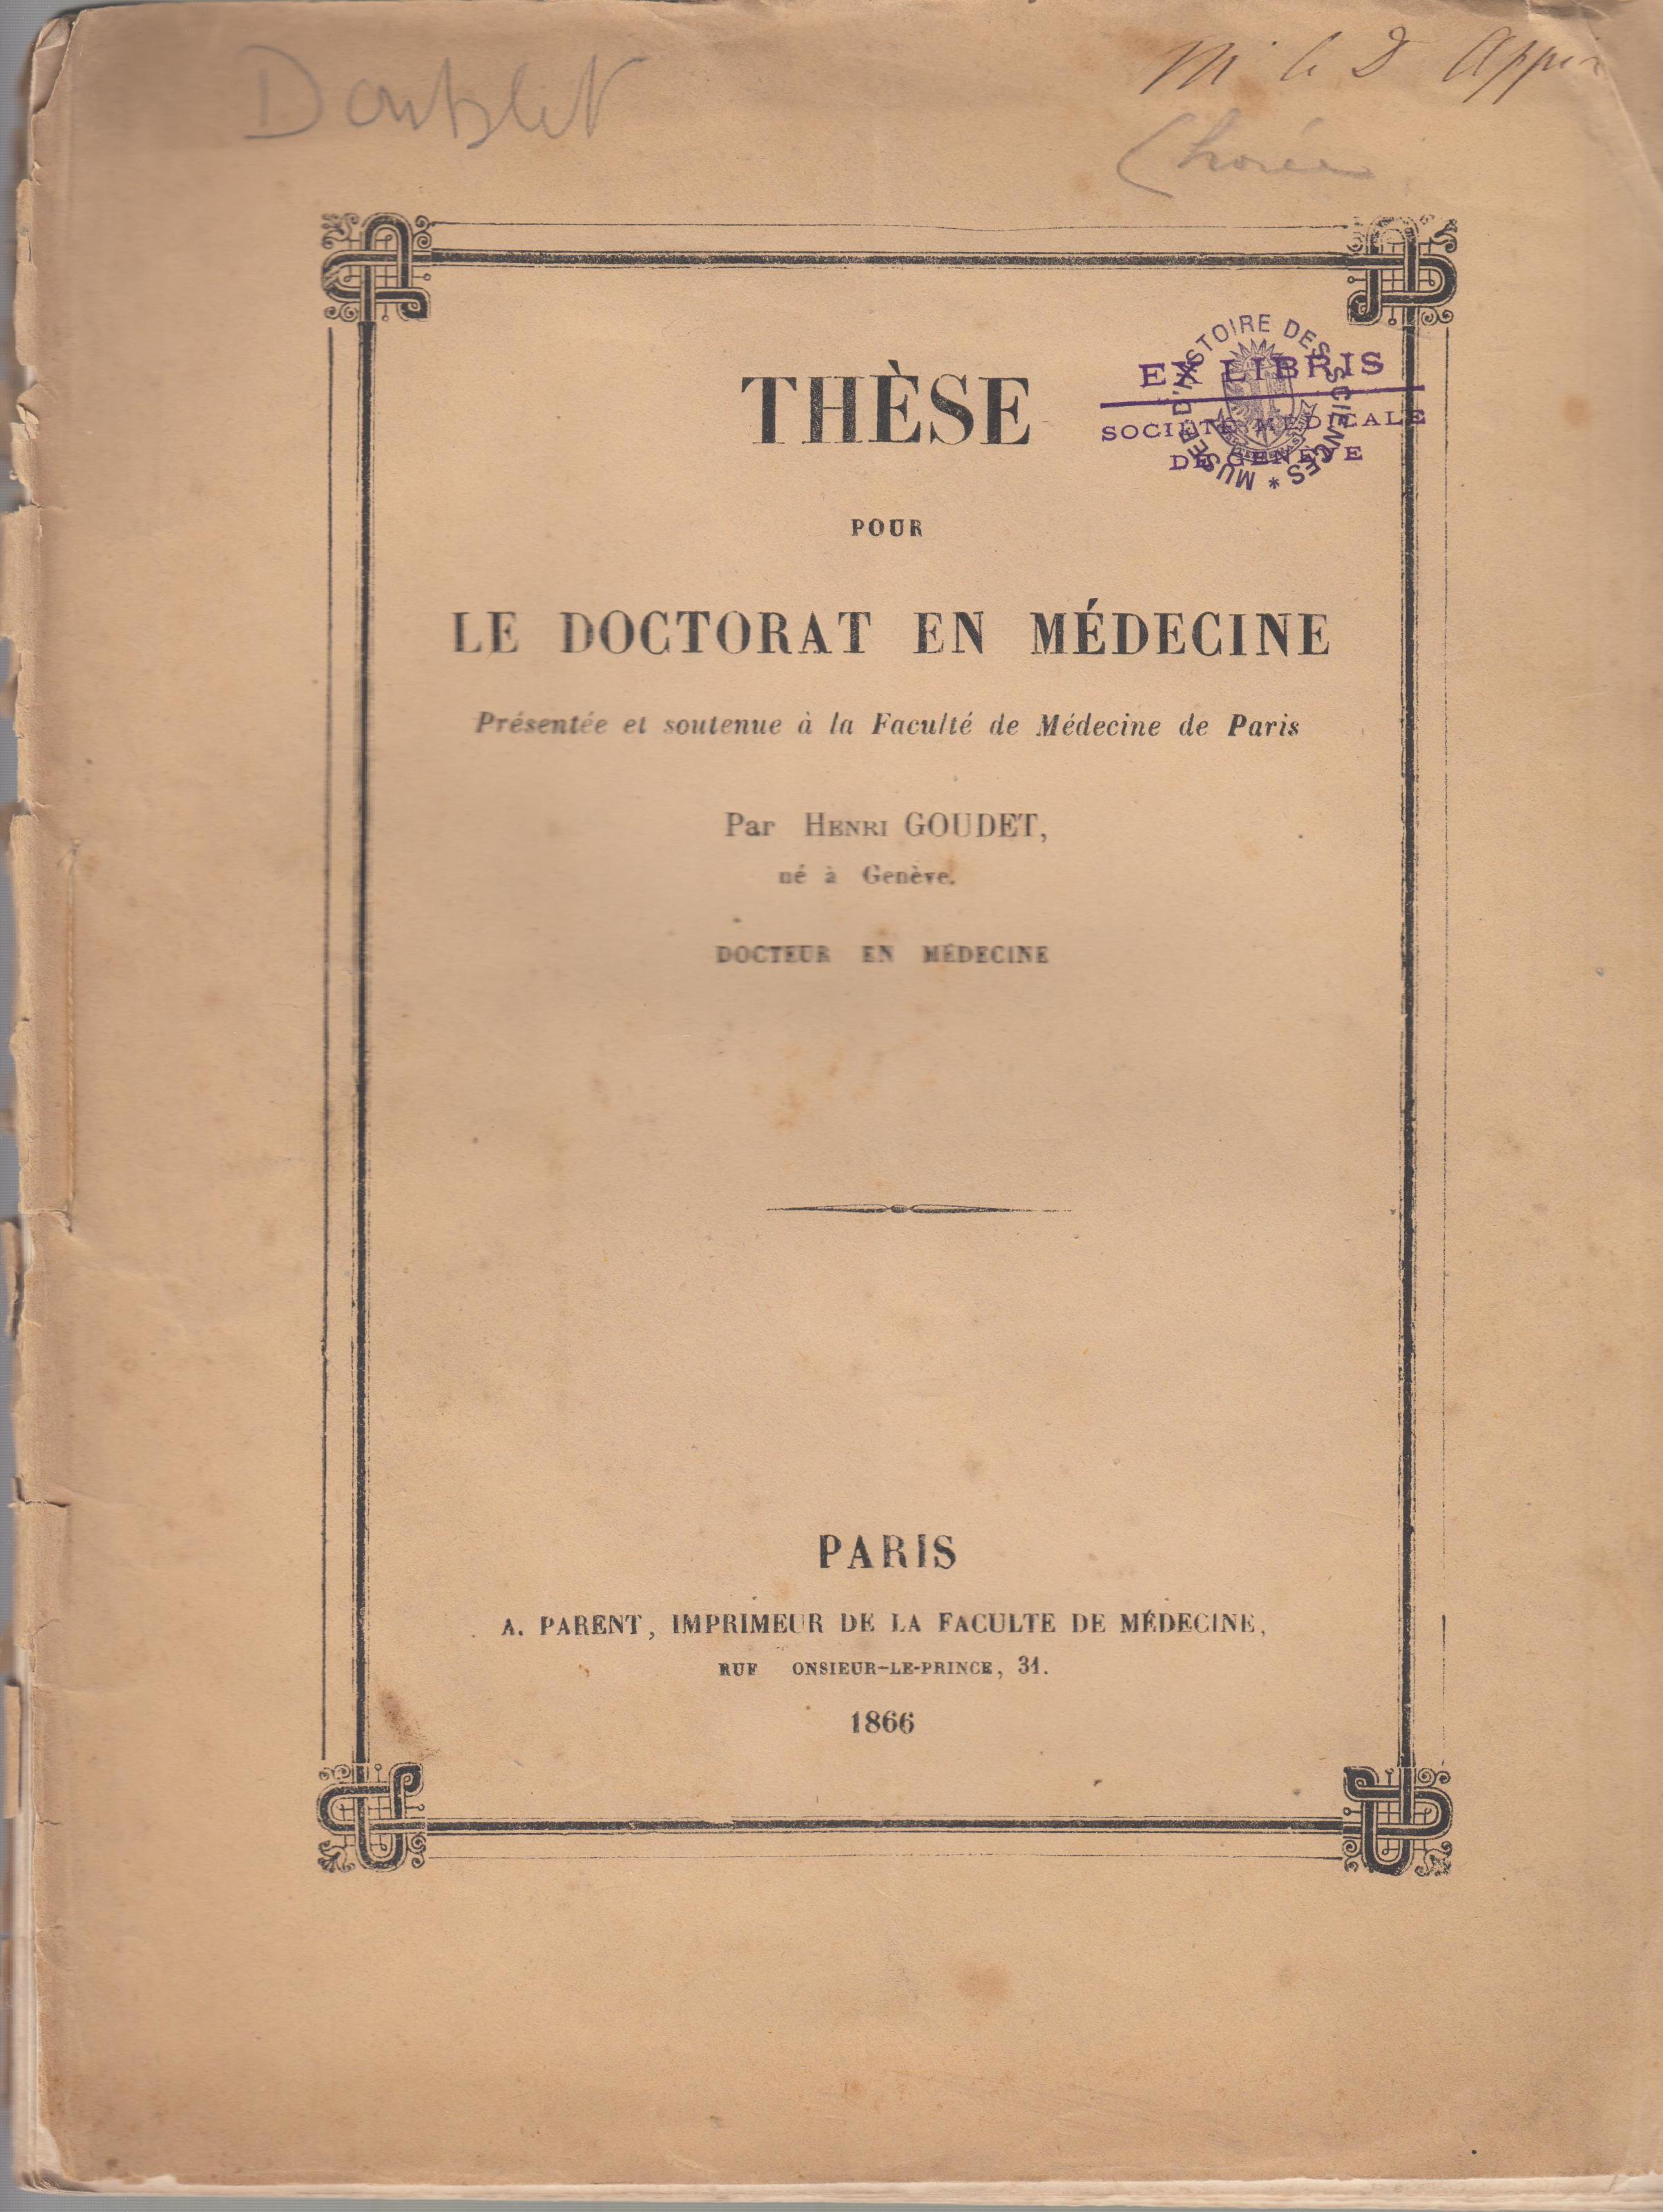 doctoral thesis en francais